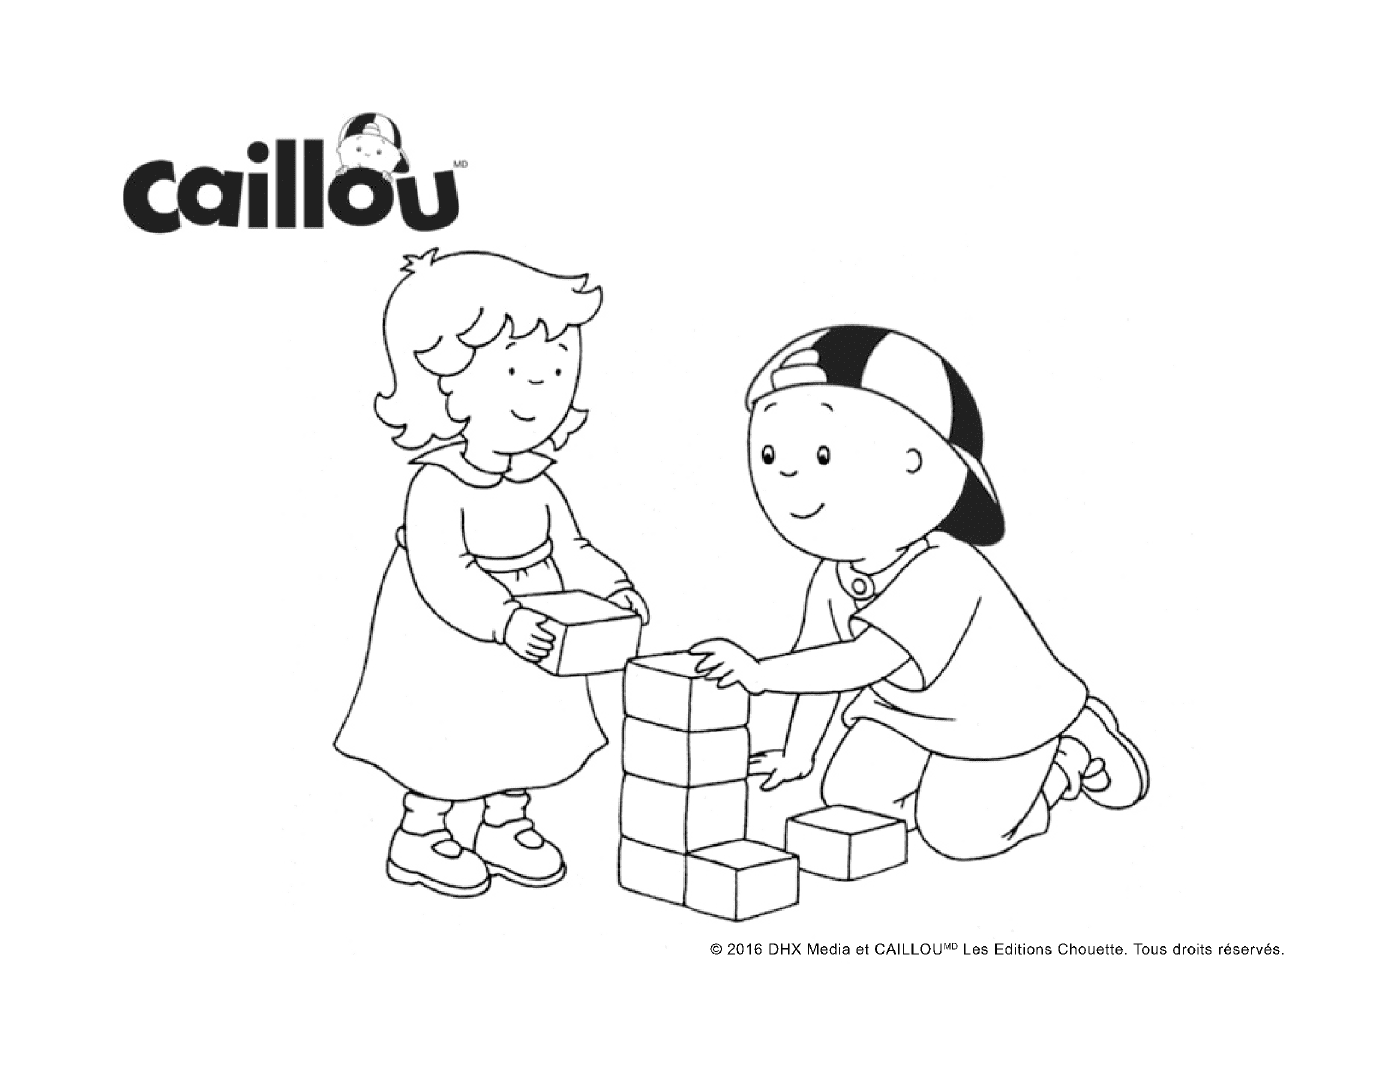  Juego de bloques con Caillou y su hermana pequeña 